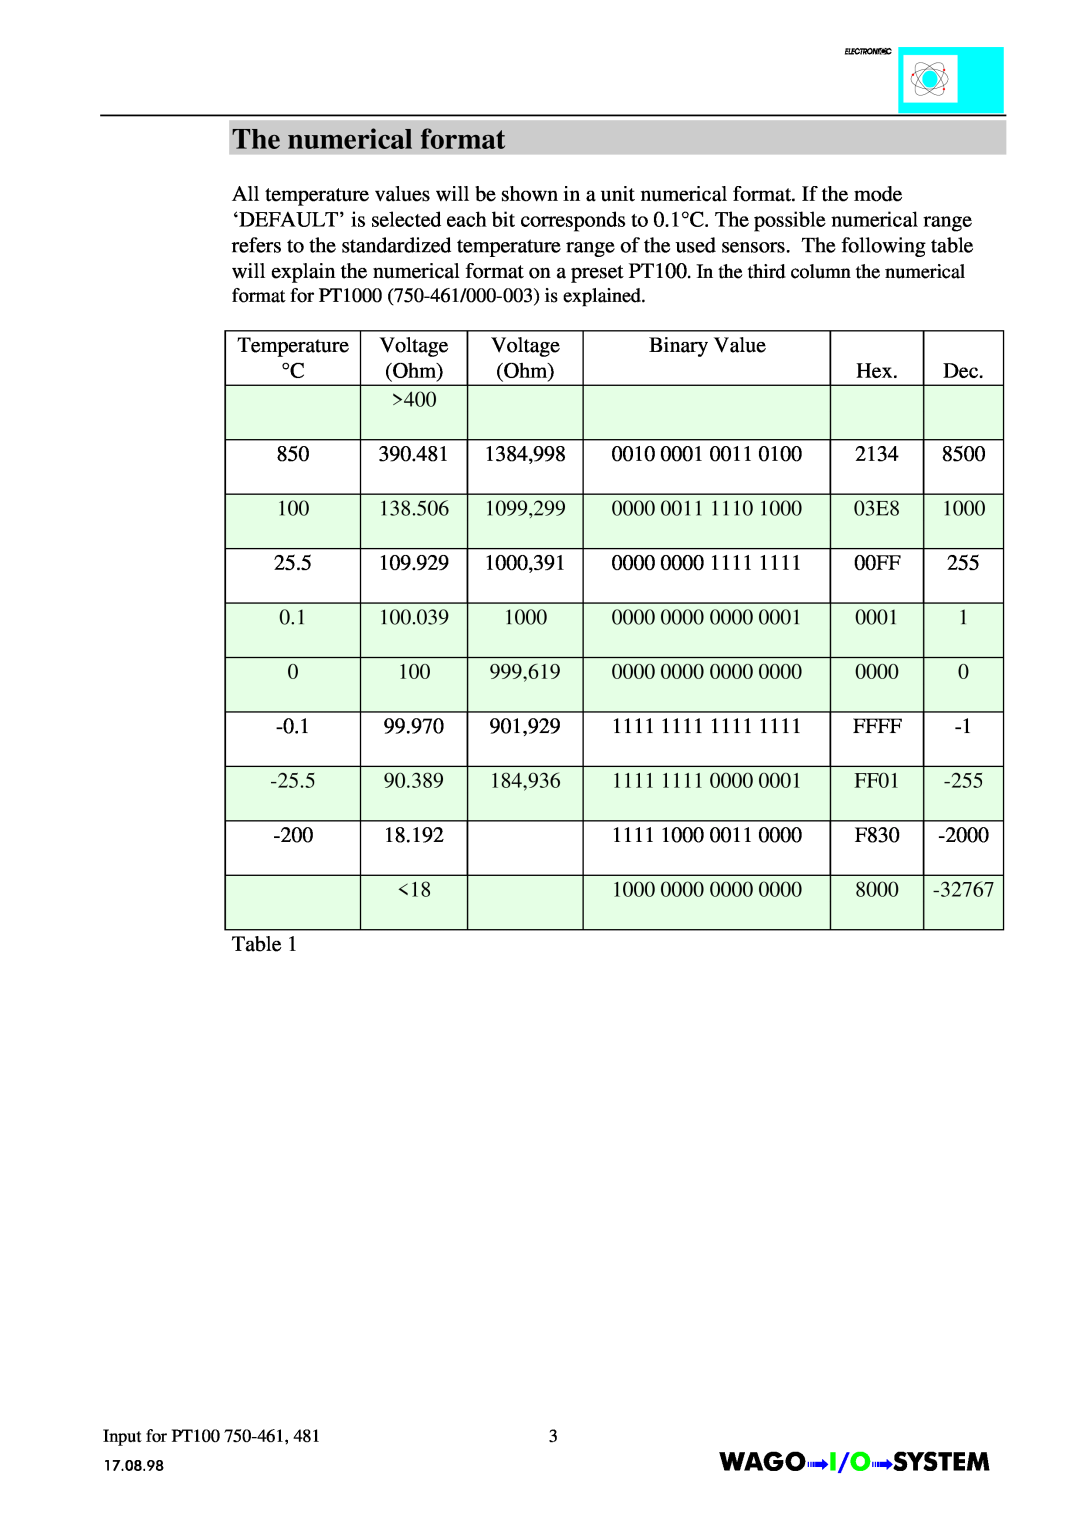 Quatech INTERBUS S manual The numerical format, Temperature C 850 100 25.5 0.1 